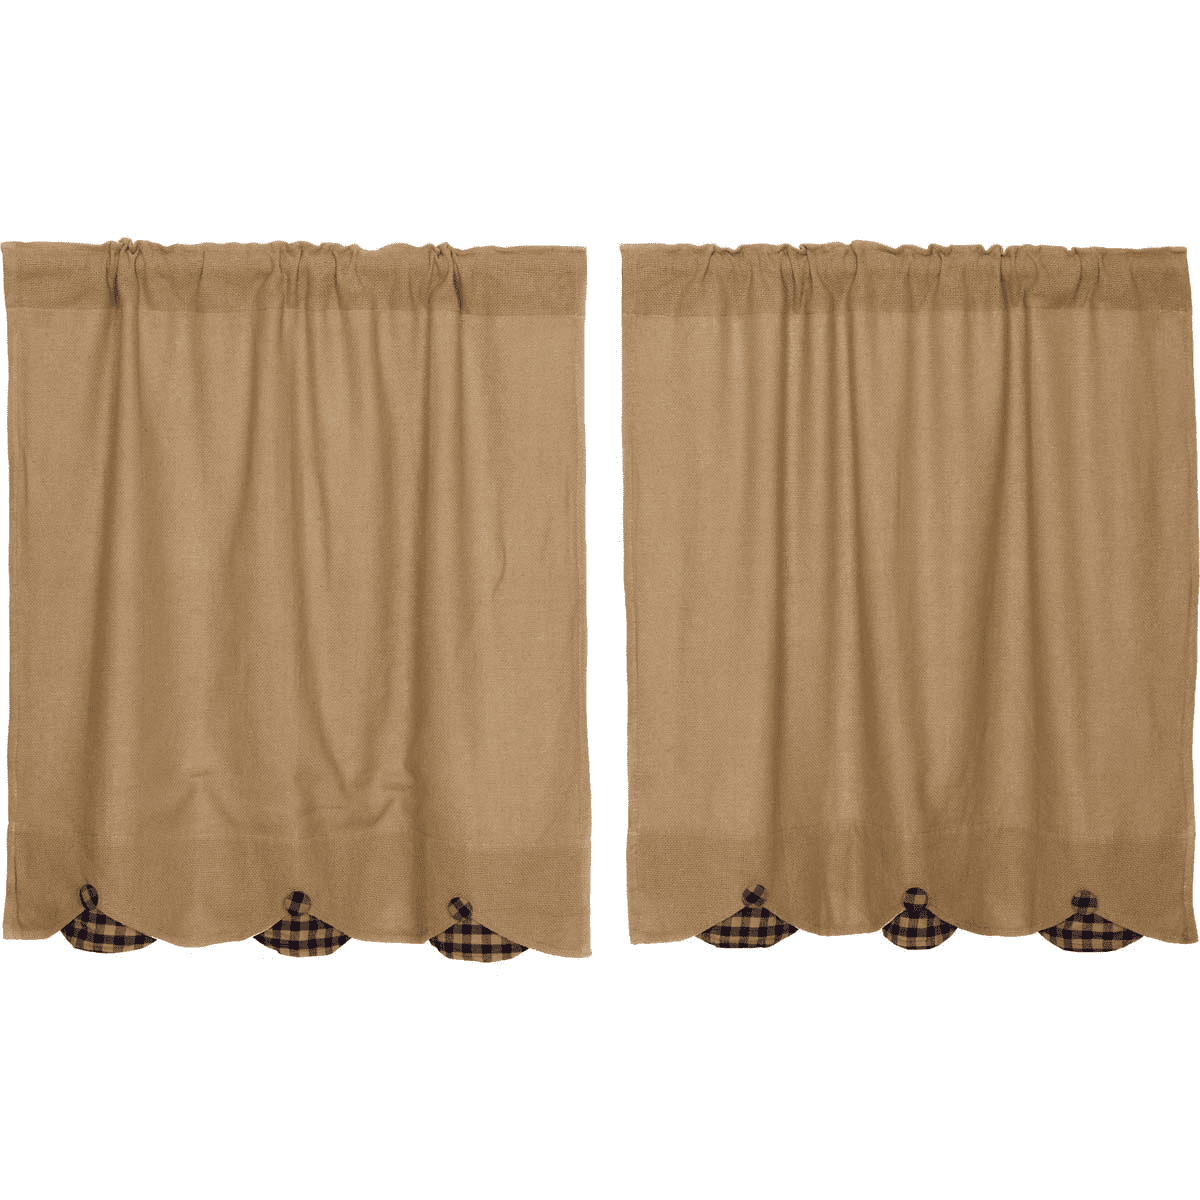 Burlap Natural Rustic Tan Cafe Curtains 100% Cotton Window Tier Set 36" L 